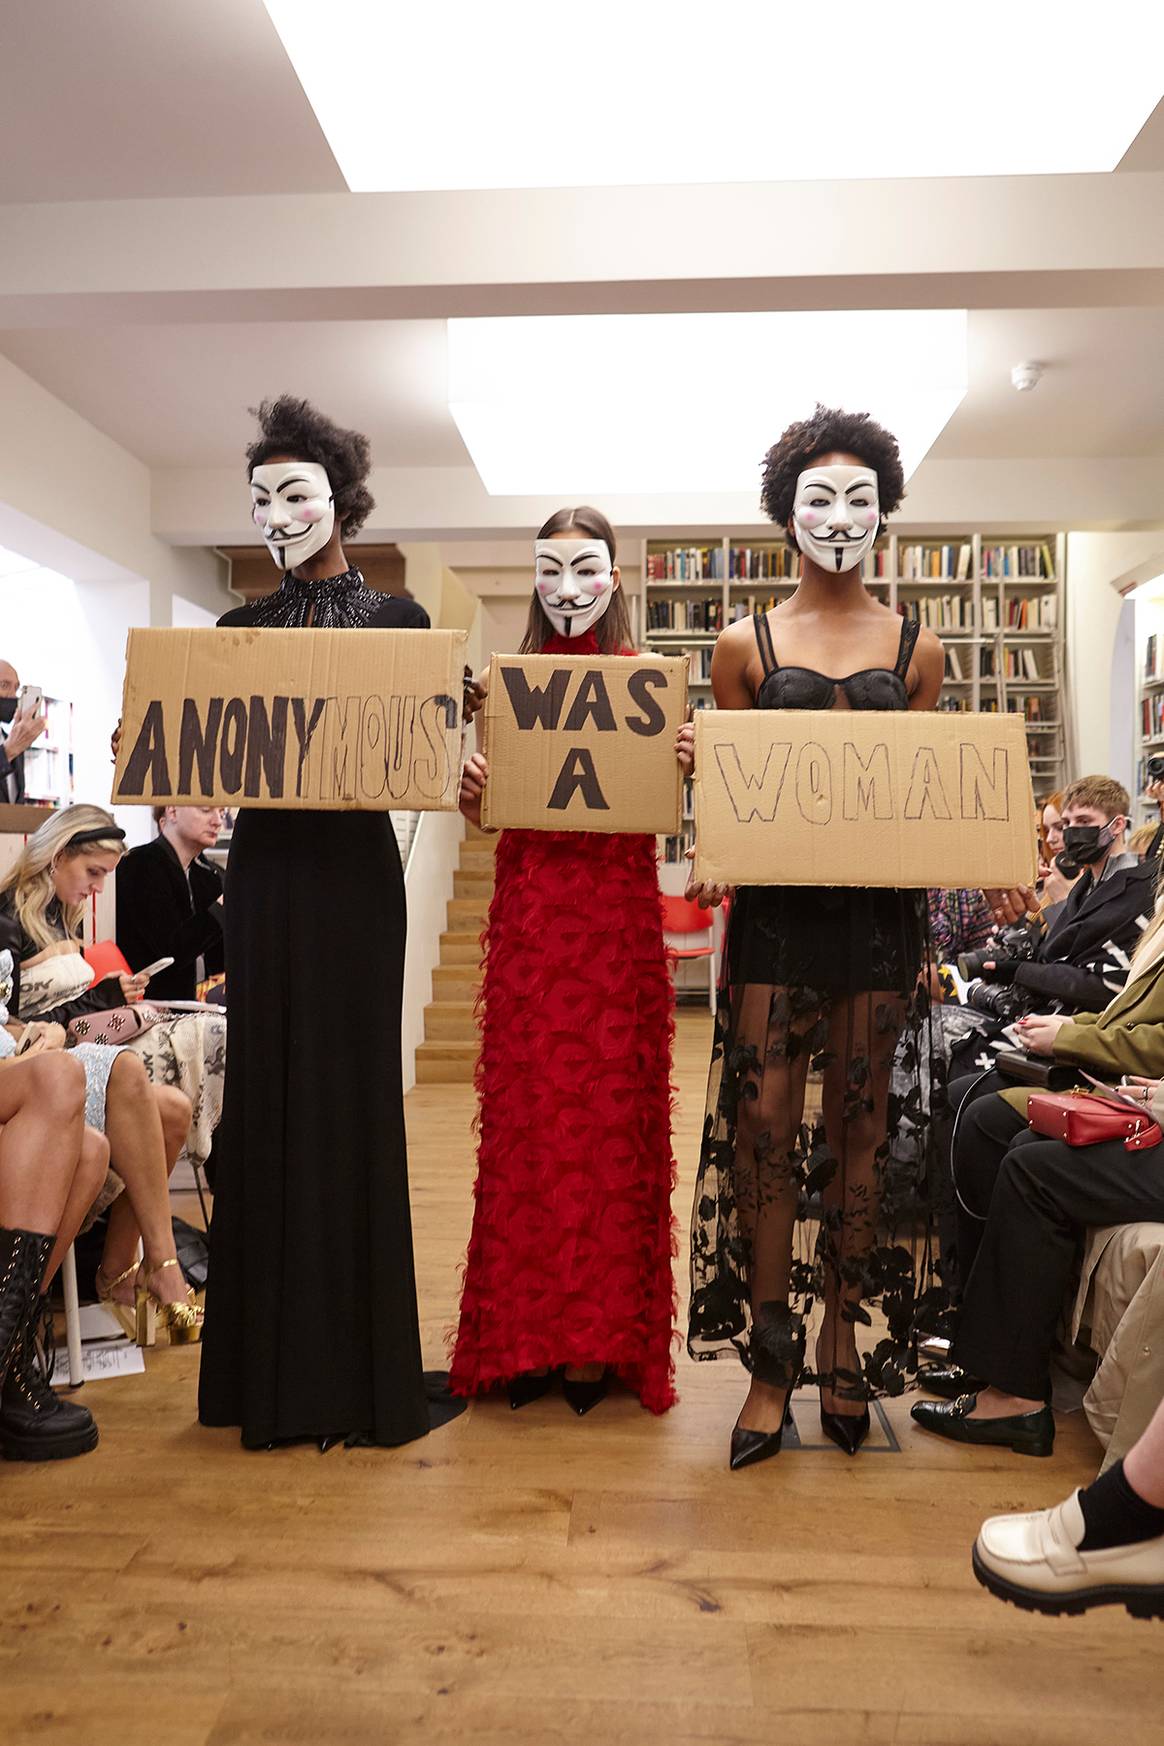 Photo Credits: Sohuman, desfile de la colección “Anonymous was a woman” (Anónimo era mujer) durante la London Fashion Week. Fotografía de cortesía.